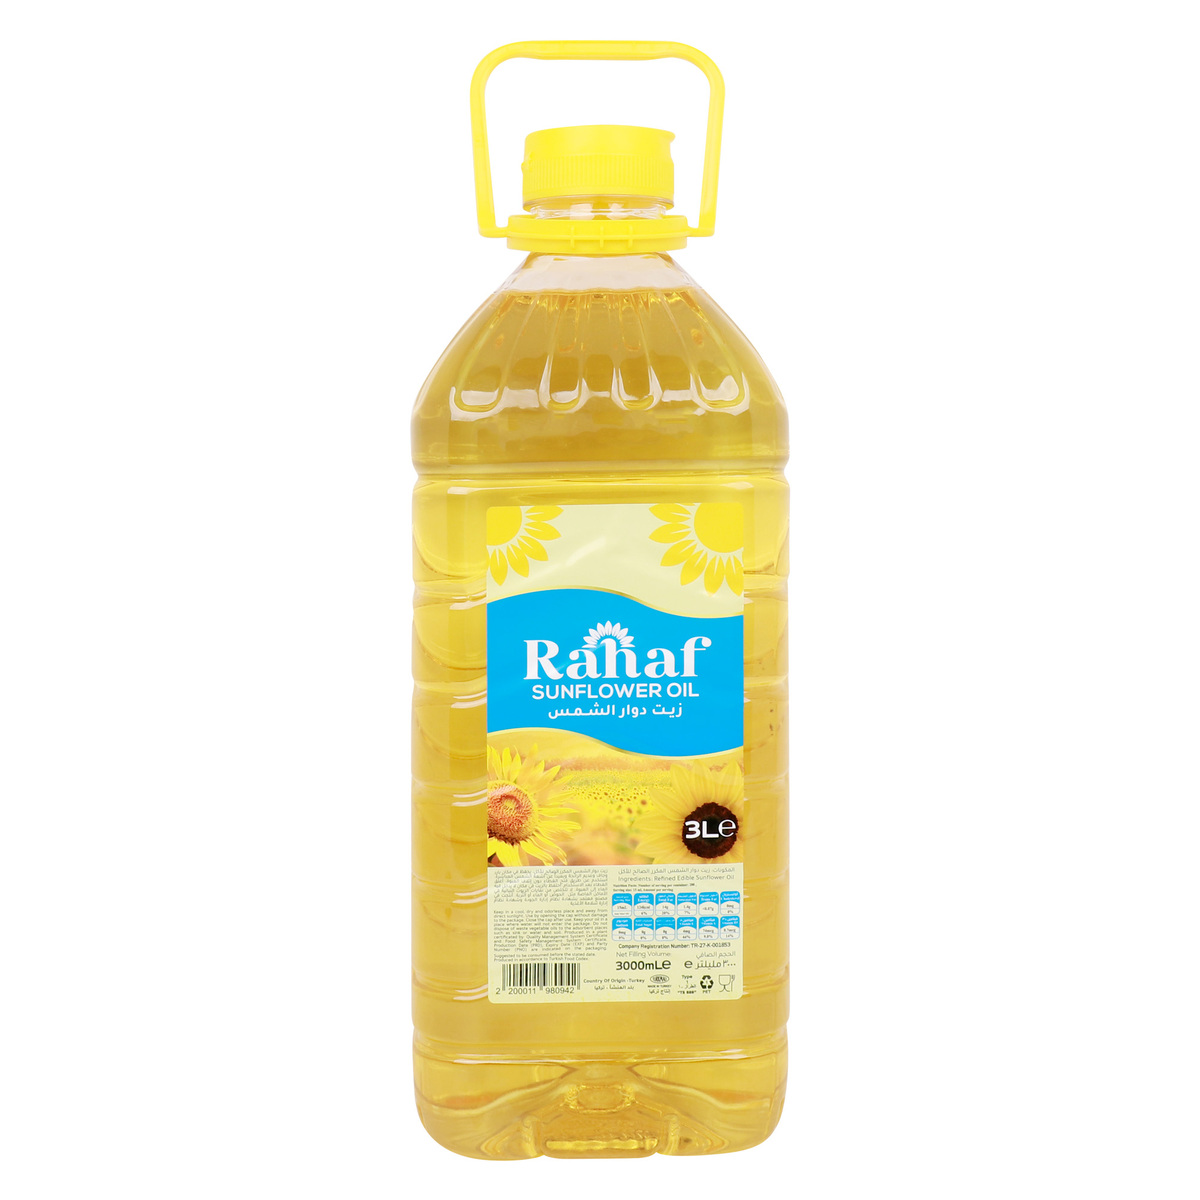 اشتري قم بشراء رهف زيت دوار الشمس 3 لتر Online at Best Price من الموقع - من لولو هايبر ماركت Sunflower Oil في السعودية